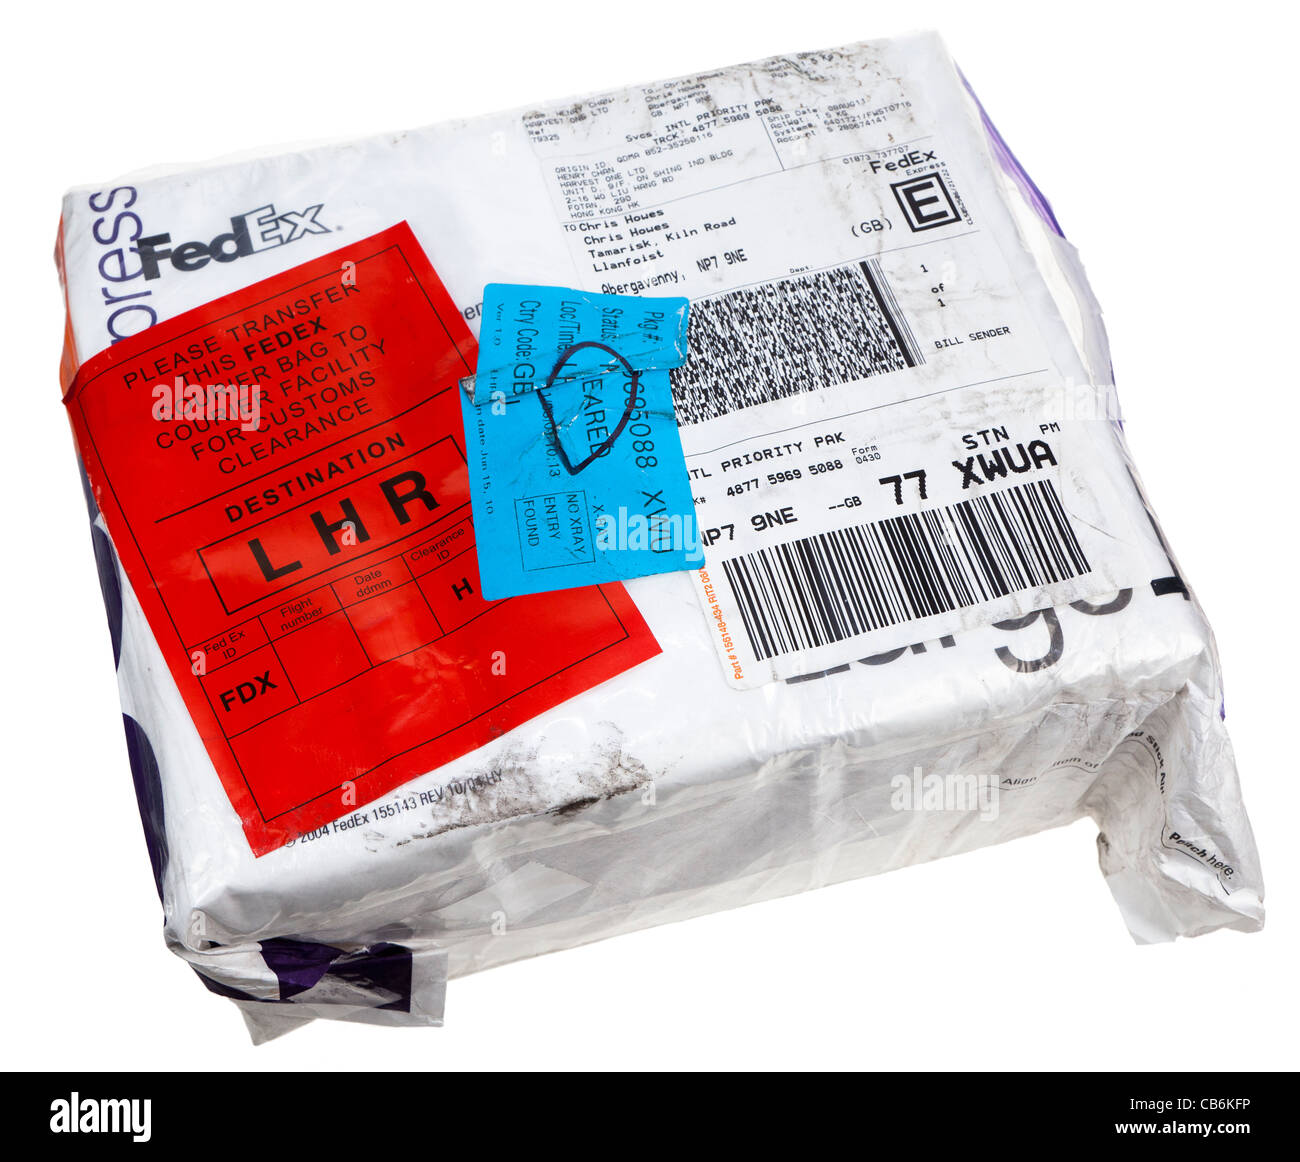 Colis livré par Fedex International airmail avec autocollant de dédouanement UK Banque D'Images